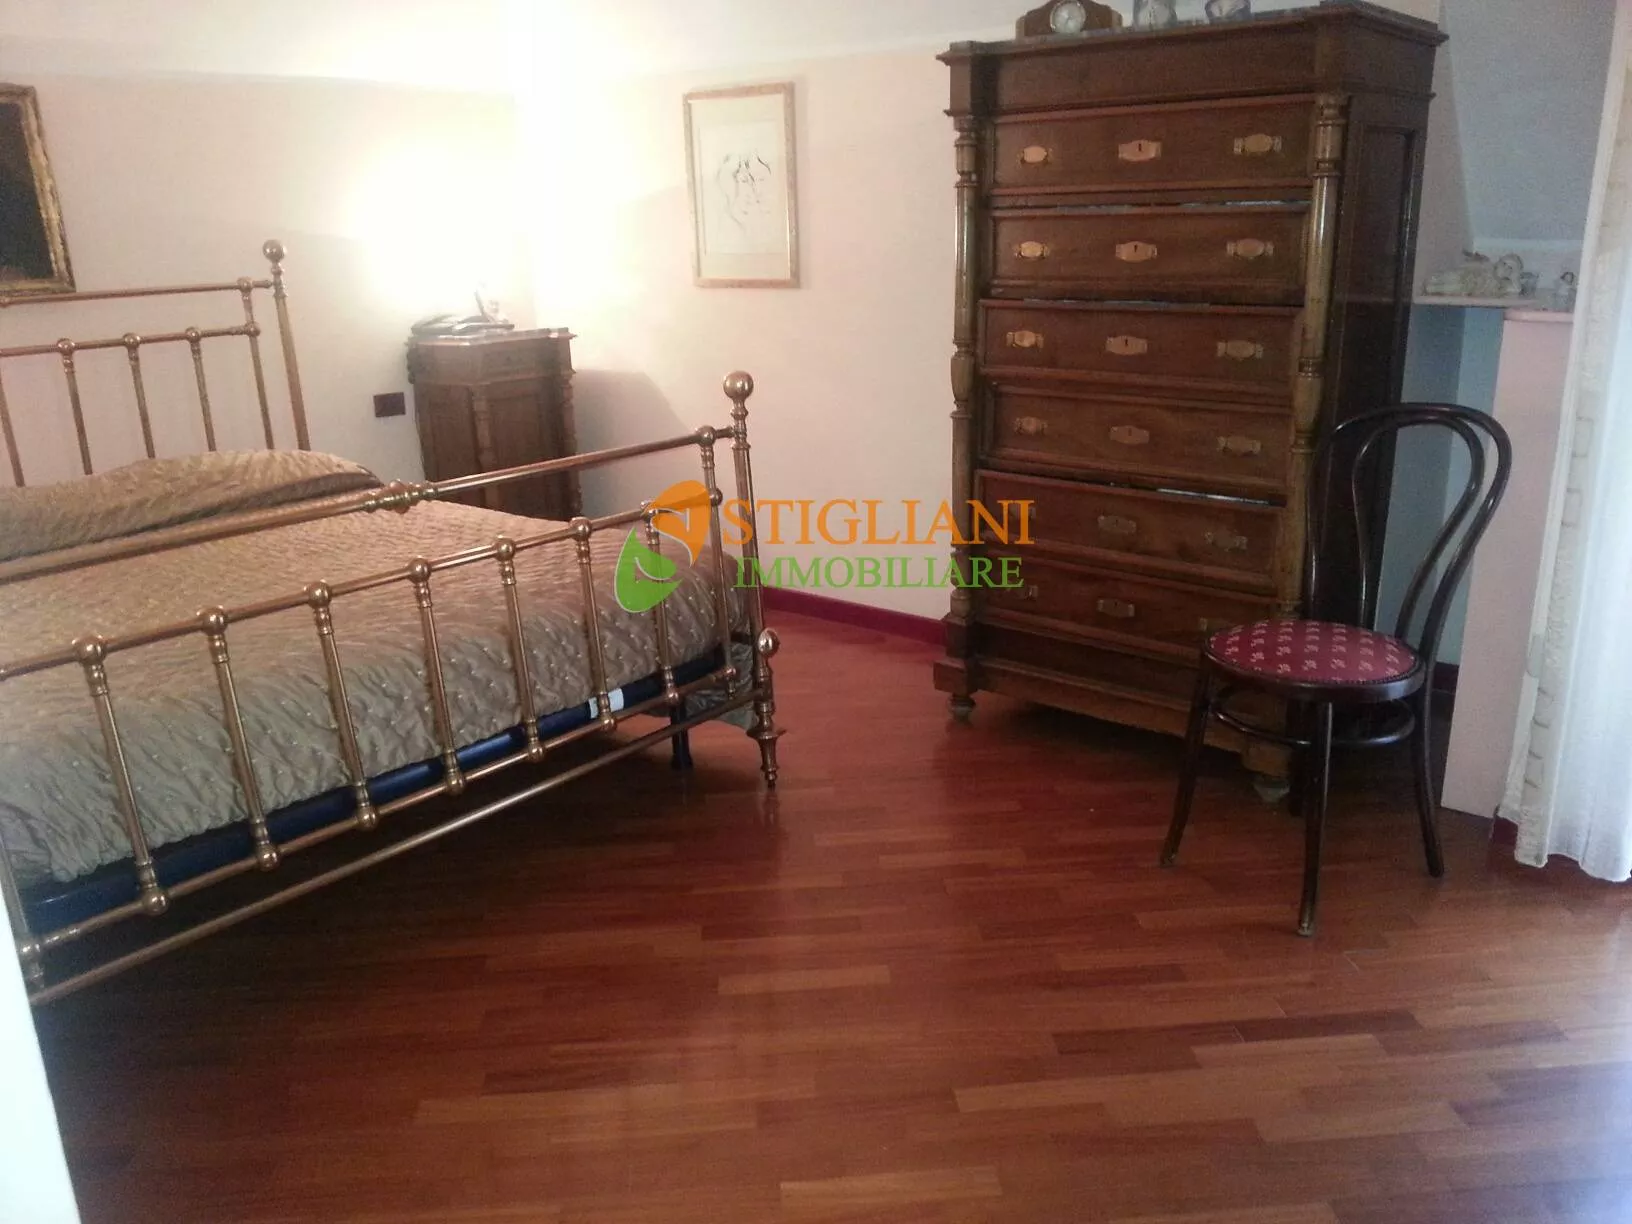 Immagine per Appartamento in vendita a Campobasso zona Principe di Piemonte